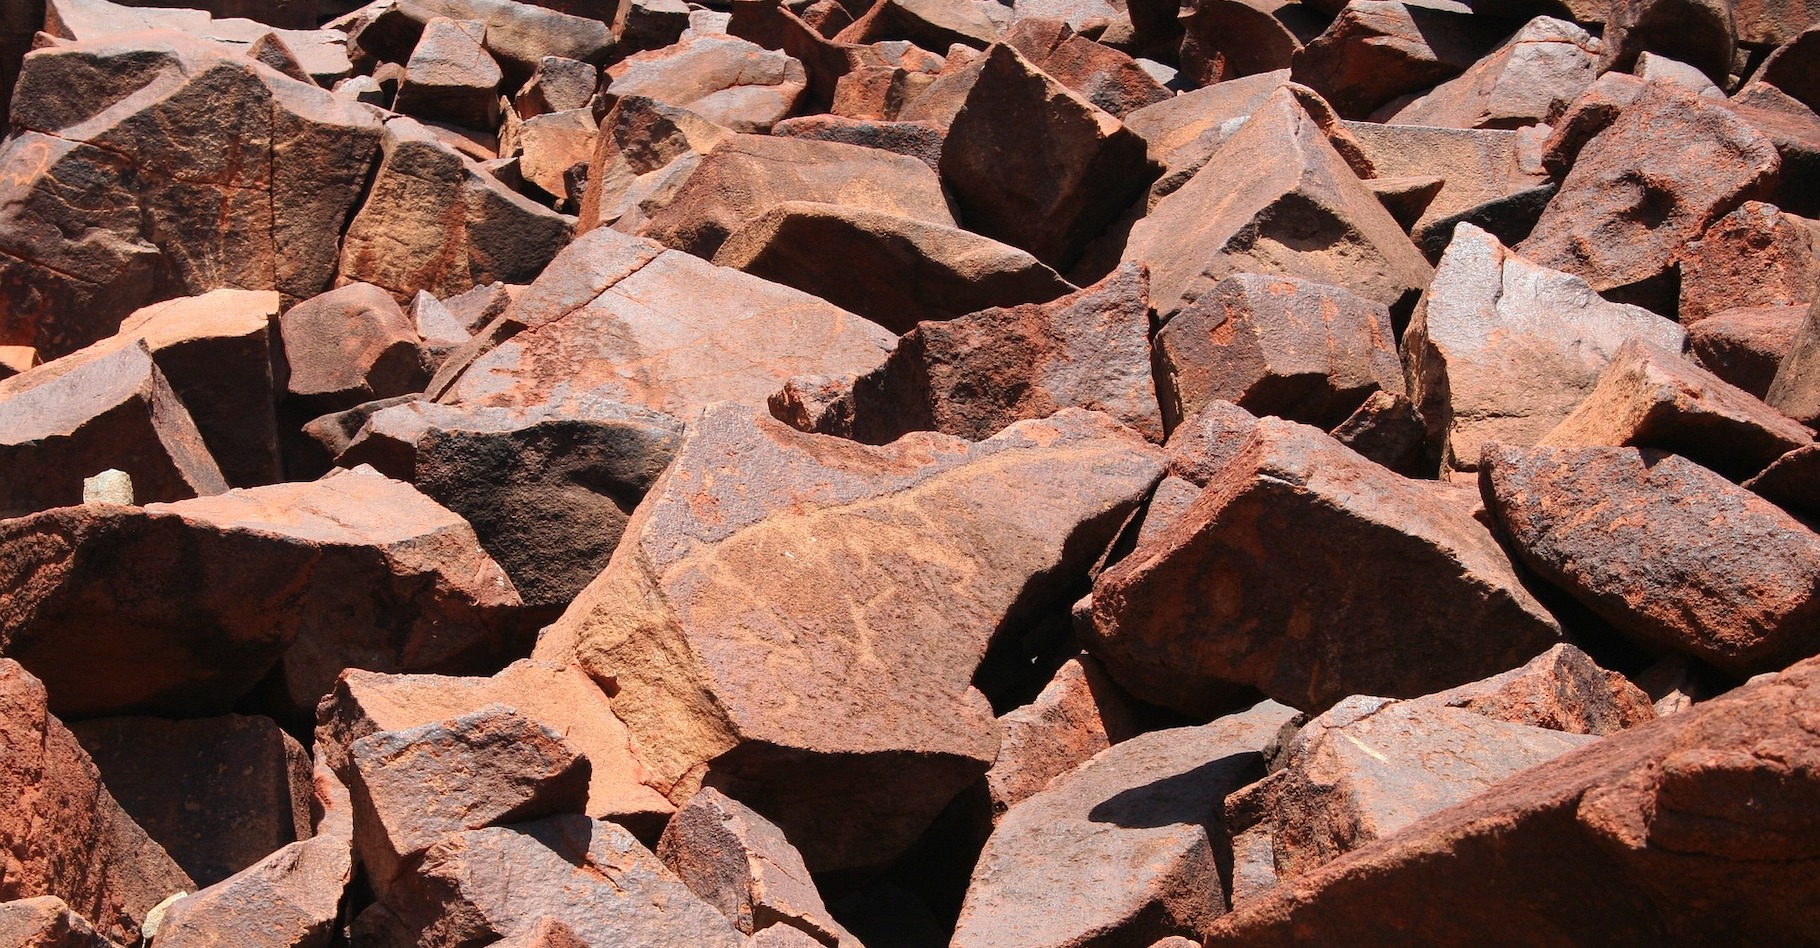 À l’ouest de l’Australie, des chercheurs ont découvert des stromatolites vieux de 3,5 milliards d’années dans les années 1980. Aujourd’hui, ils confirment enfin qu’ils contiennent des restes microbiens, parmi les plus anciennes traces de vie sur Terre. © MrBlack, Pixabay License